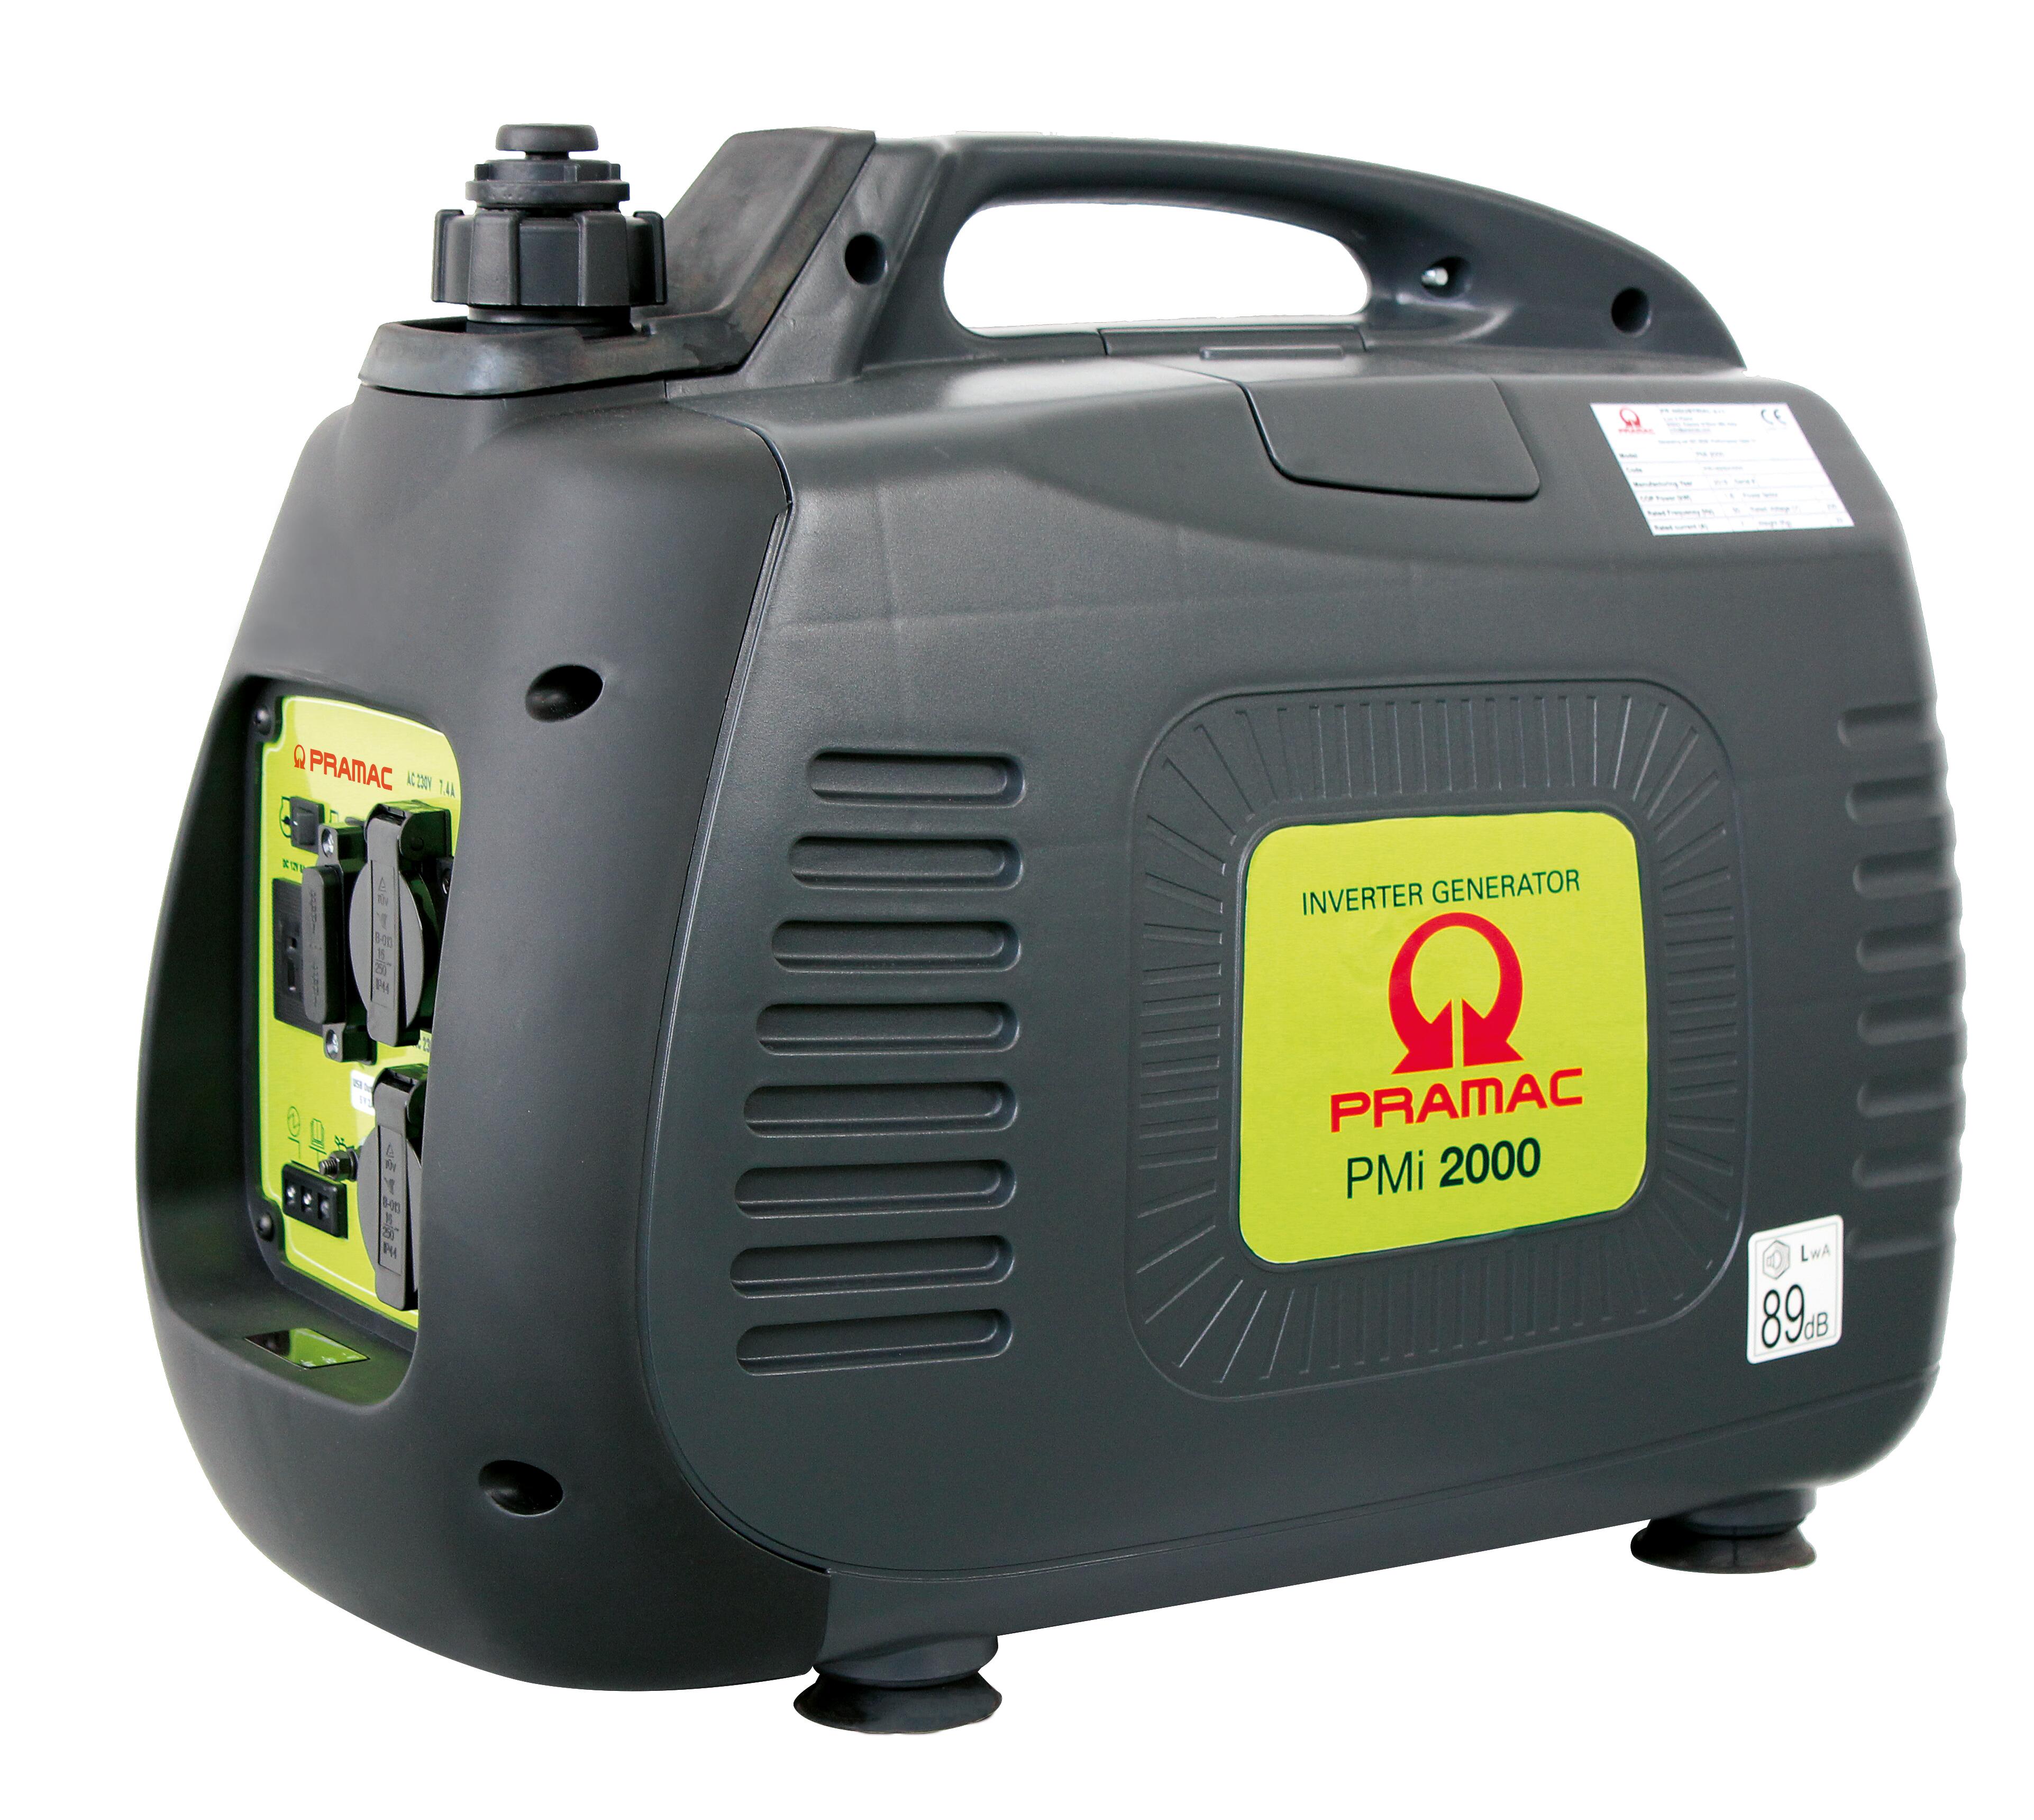 Generador inverter pramac pmi2000 gasolina de 1600 w